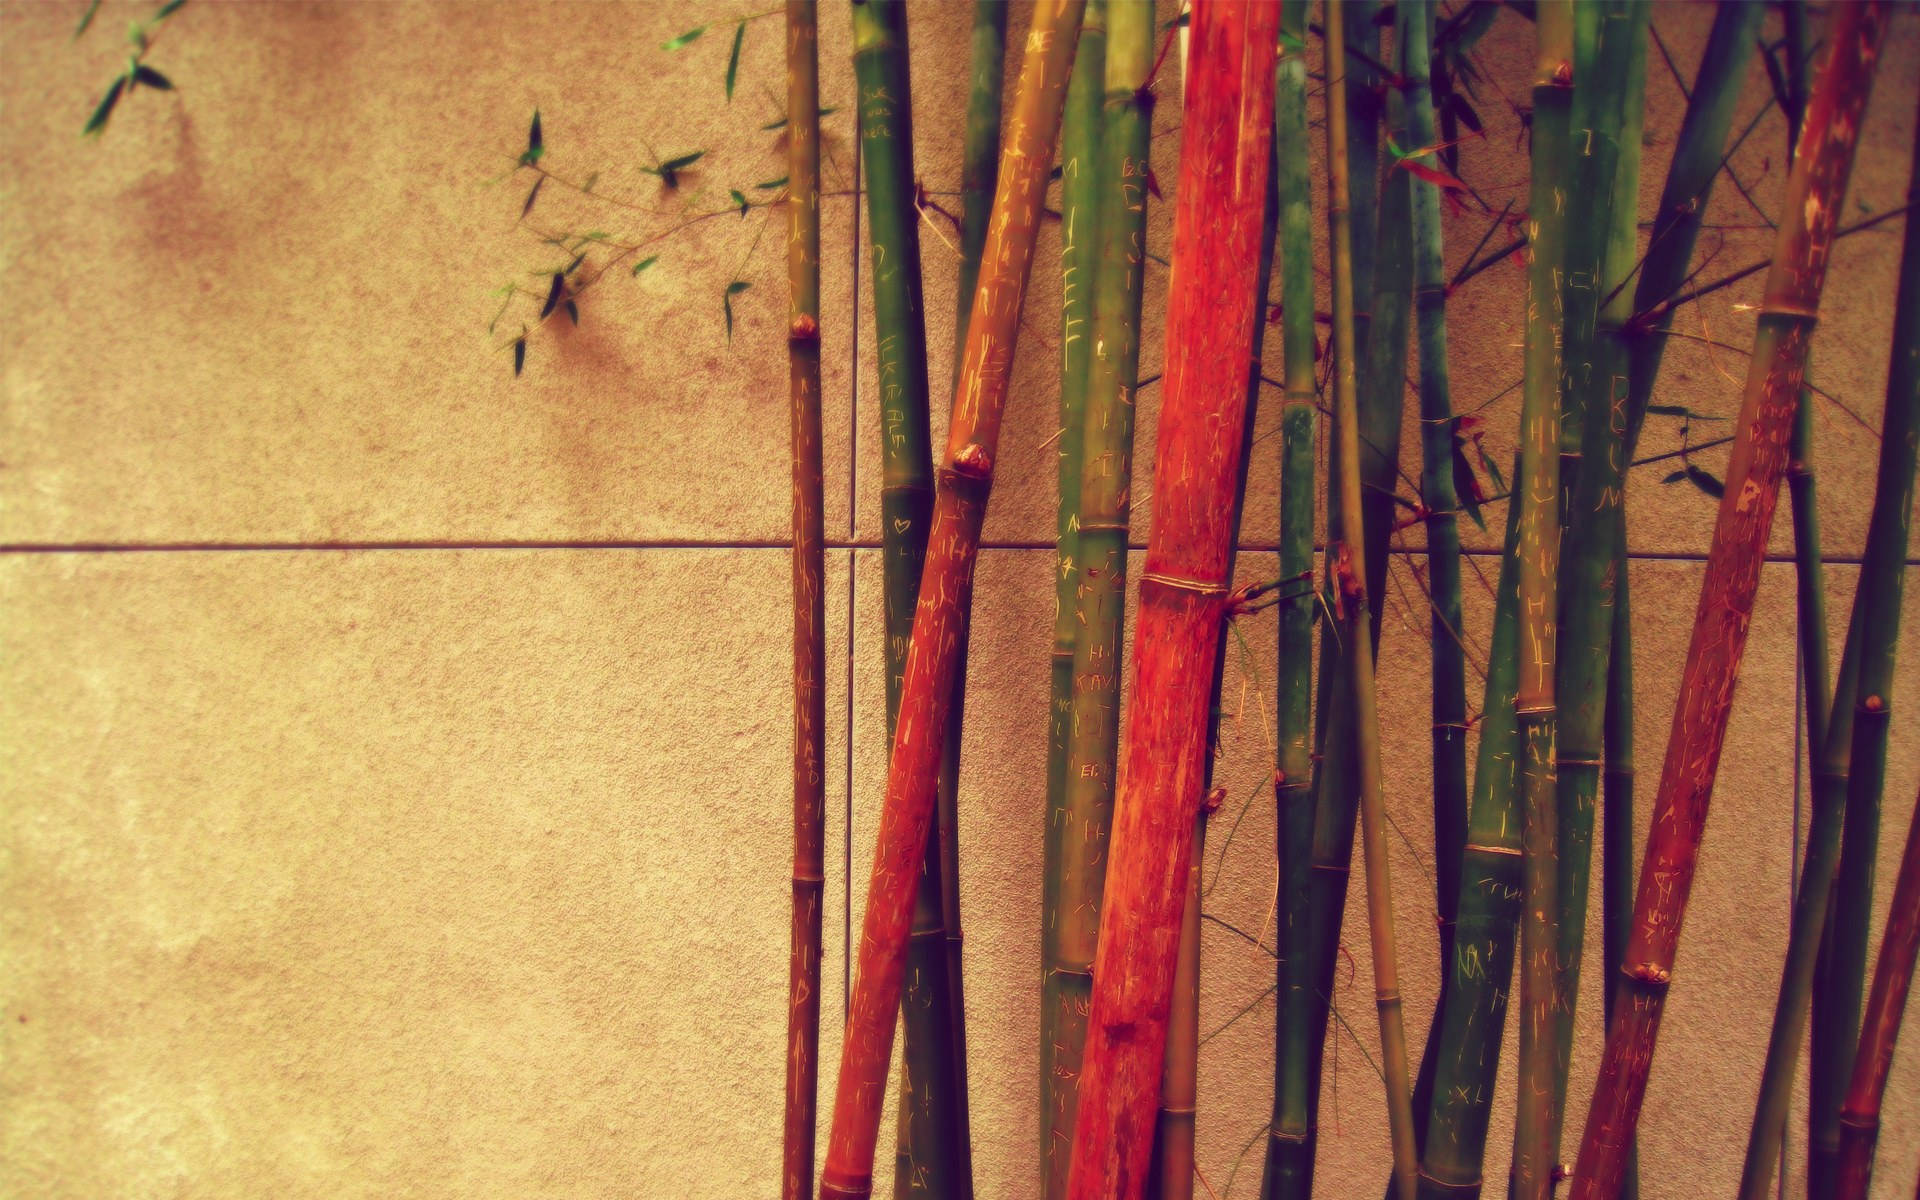 Vintage Retro Bamboo 4k Background